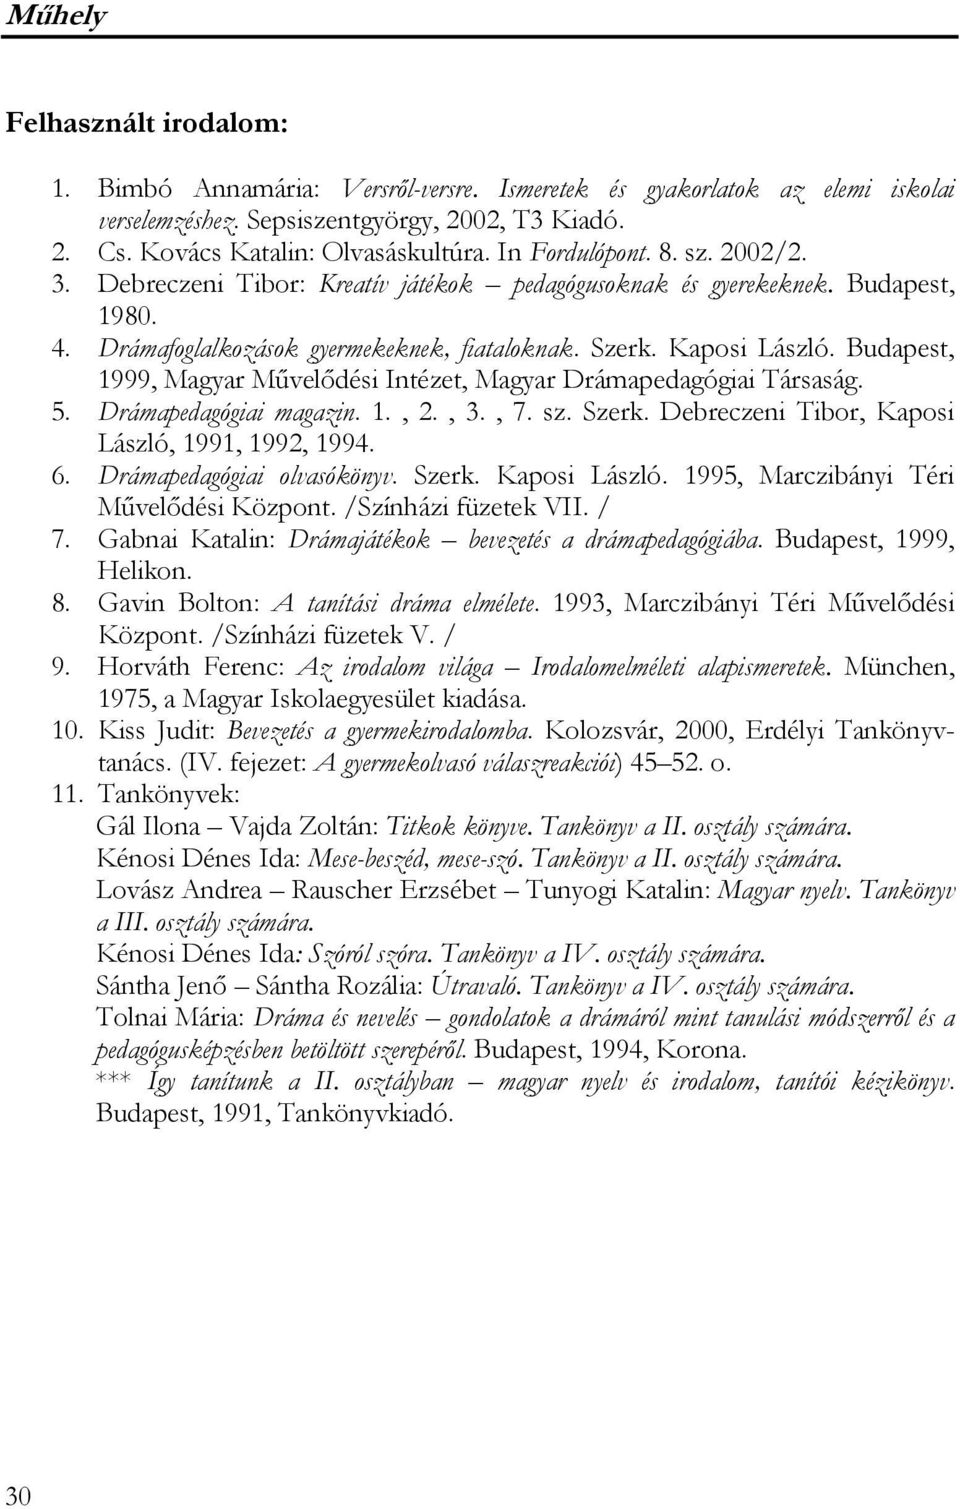 Budapest, 1999, Magyar Művelődési Intézet, Magyar Drámapedagógiai Társaság. 5. Drámapedagógiai magazin. 1., 2., 3., 7. sz. Szerk. Debreczeni Tibor, Kaposi László, 1991, 1992, 1994. 6.